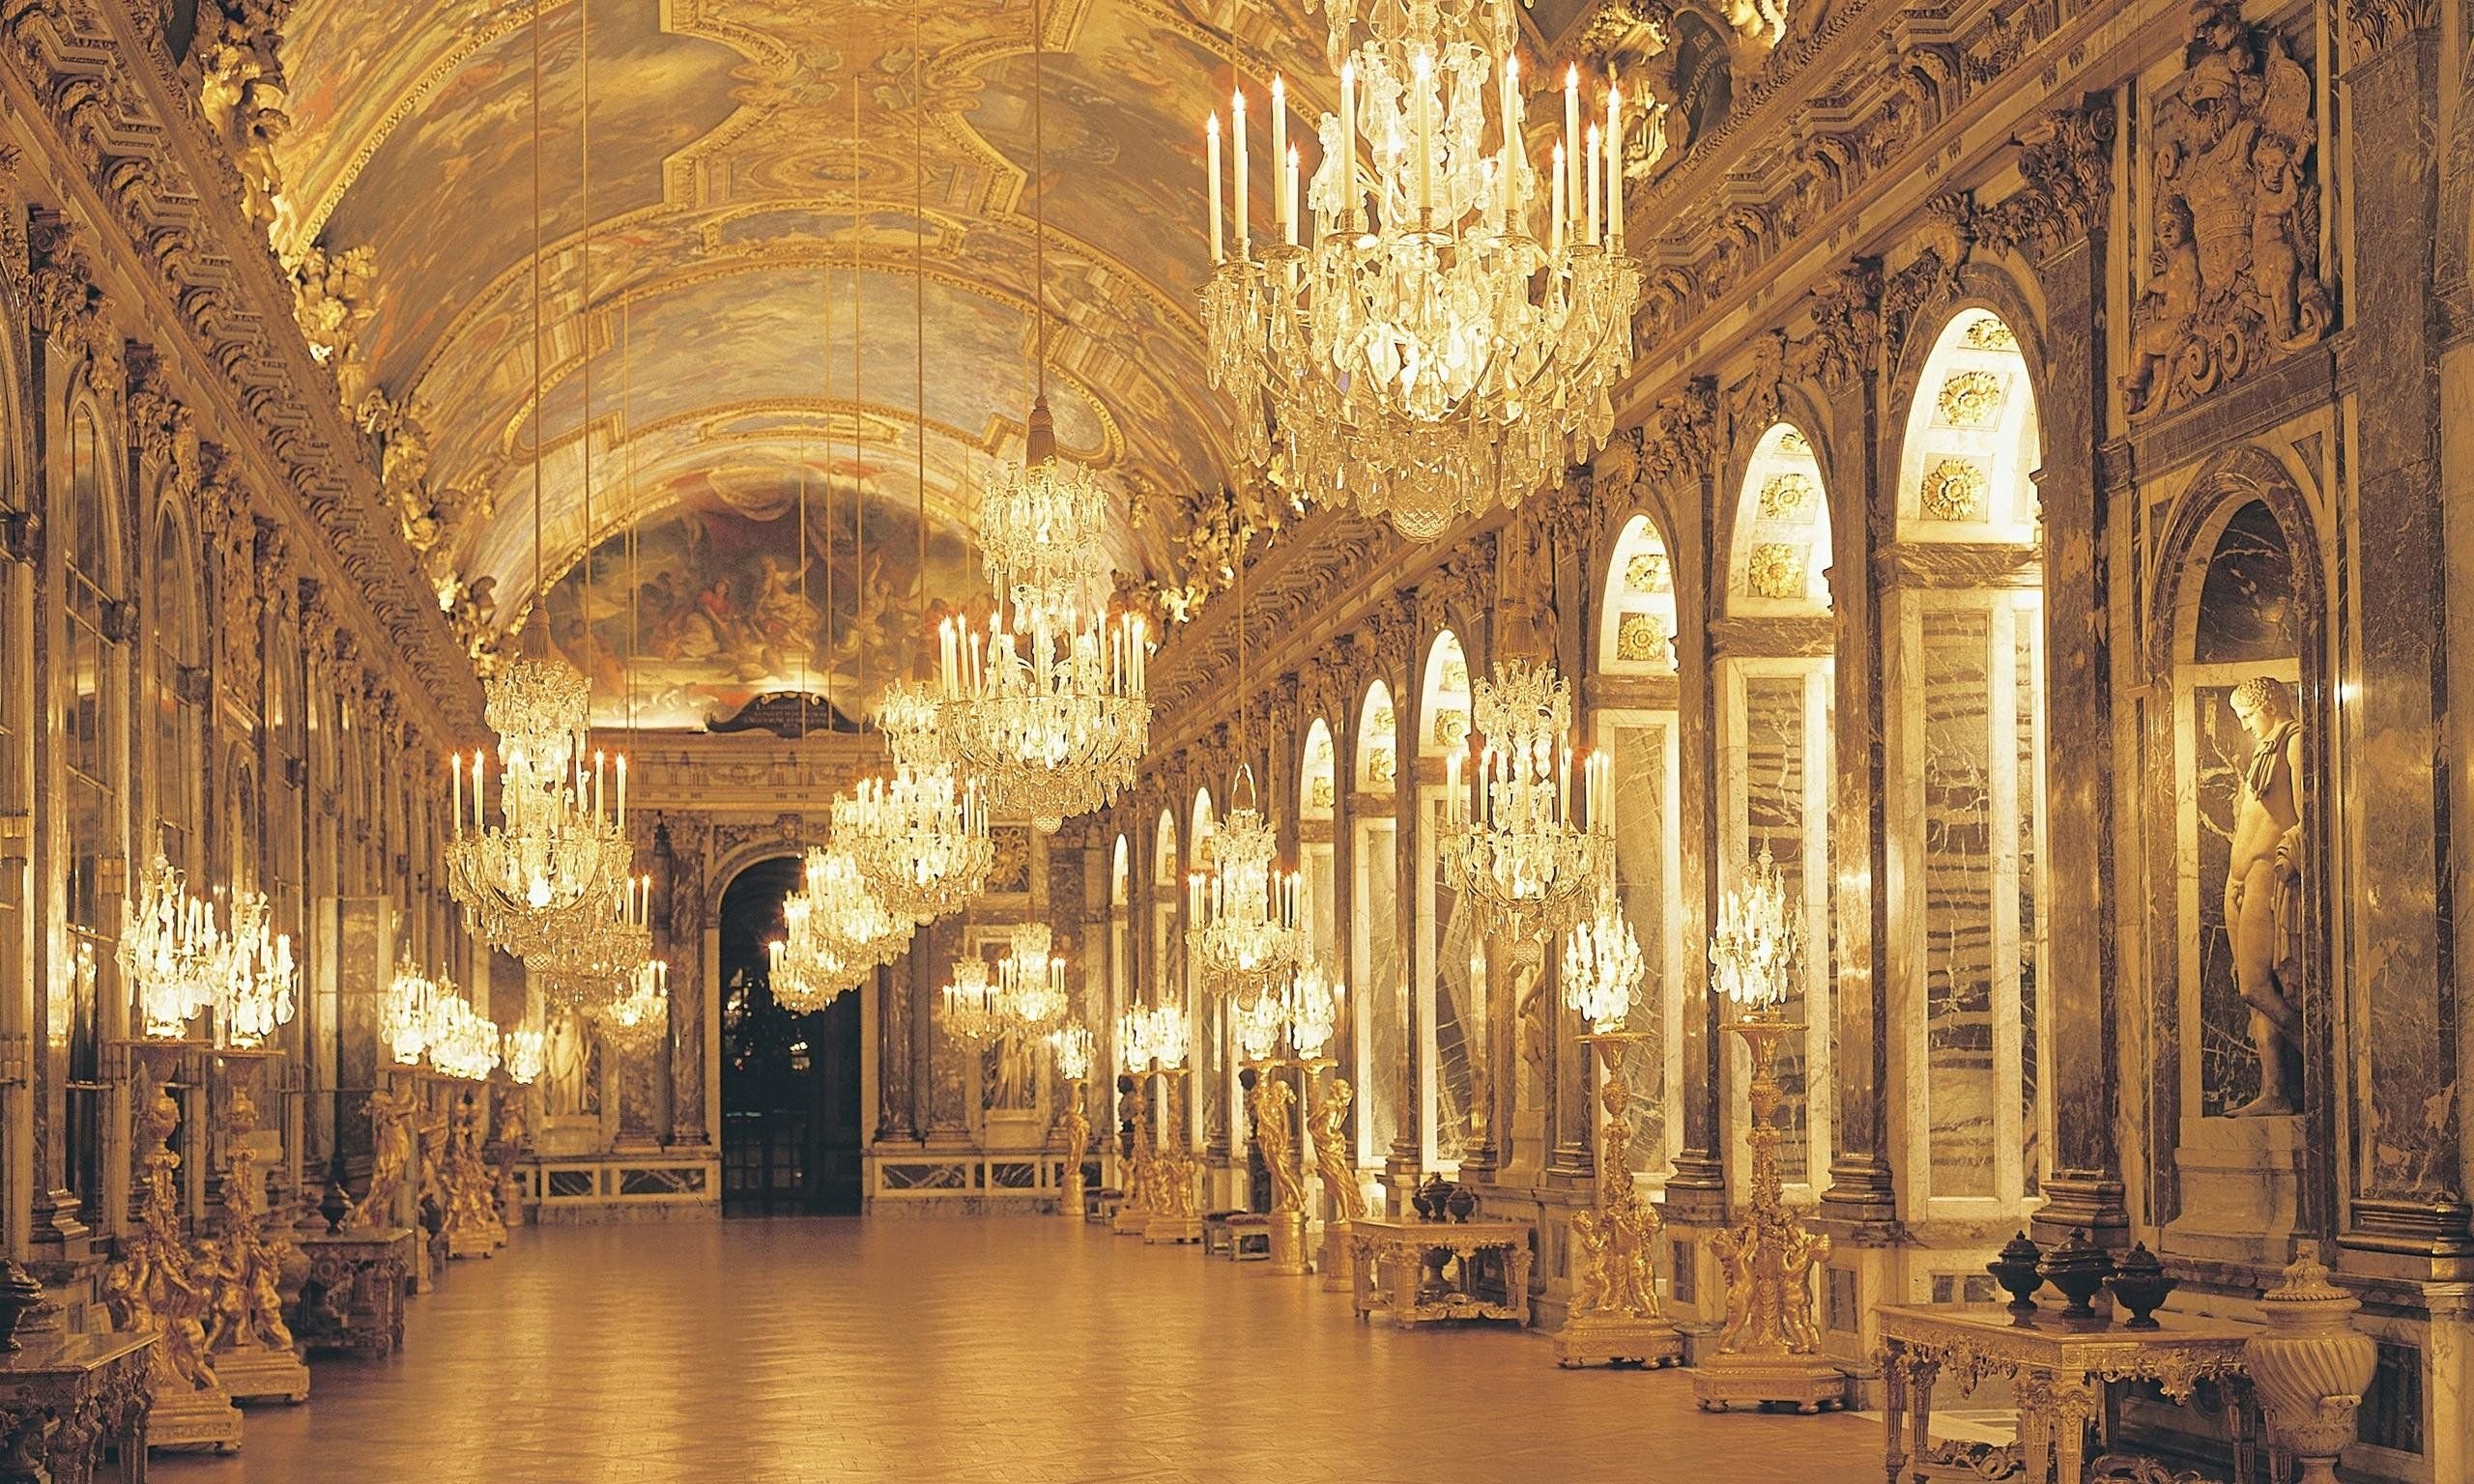 Ночной версаль. Версальский дворец бальный зал. Шато де Версаль, Франция. Дворец Версаль Франция внутри. Королевская часовня Версальского дворца.